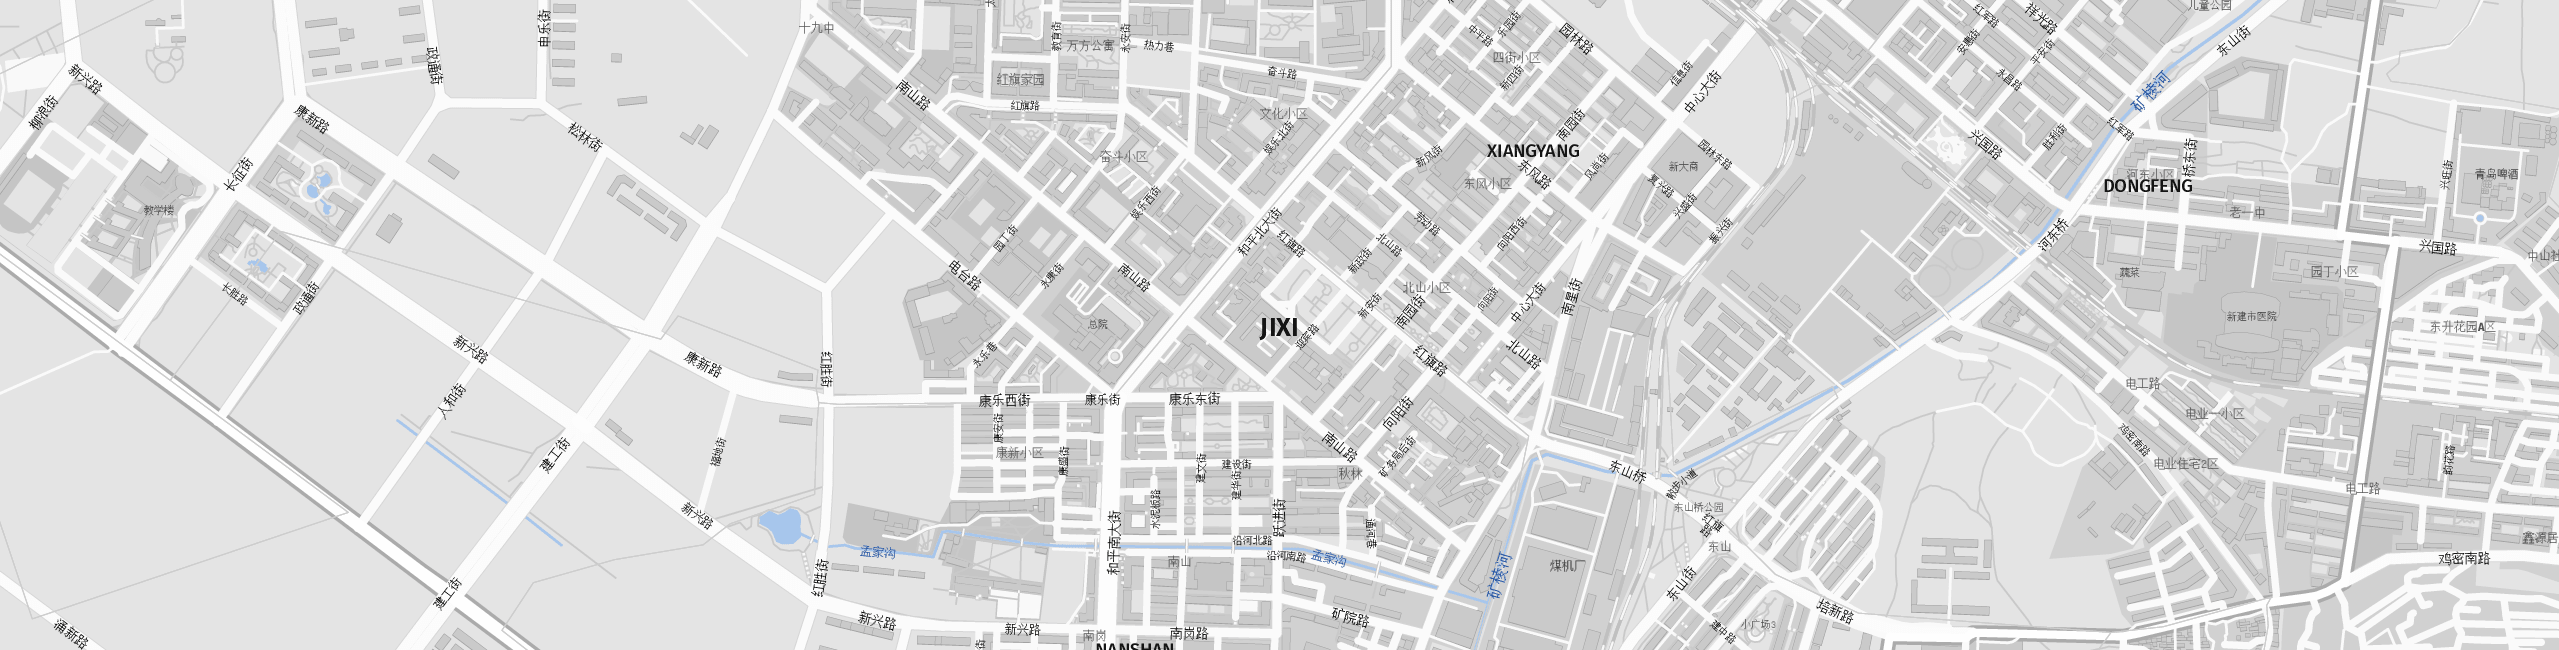 Stadtplan Jixi zum Downloaden.